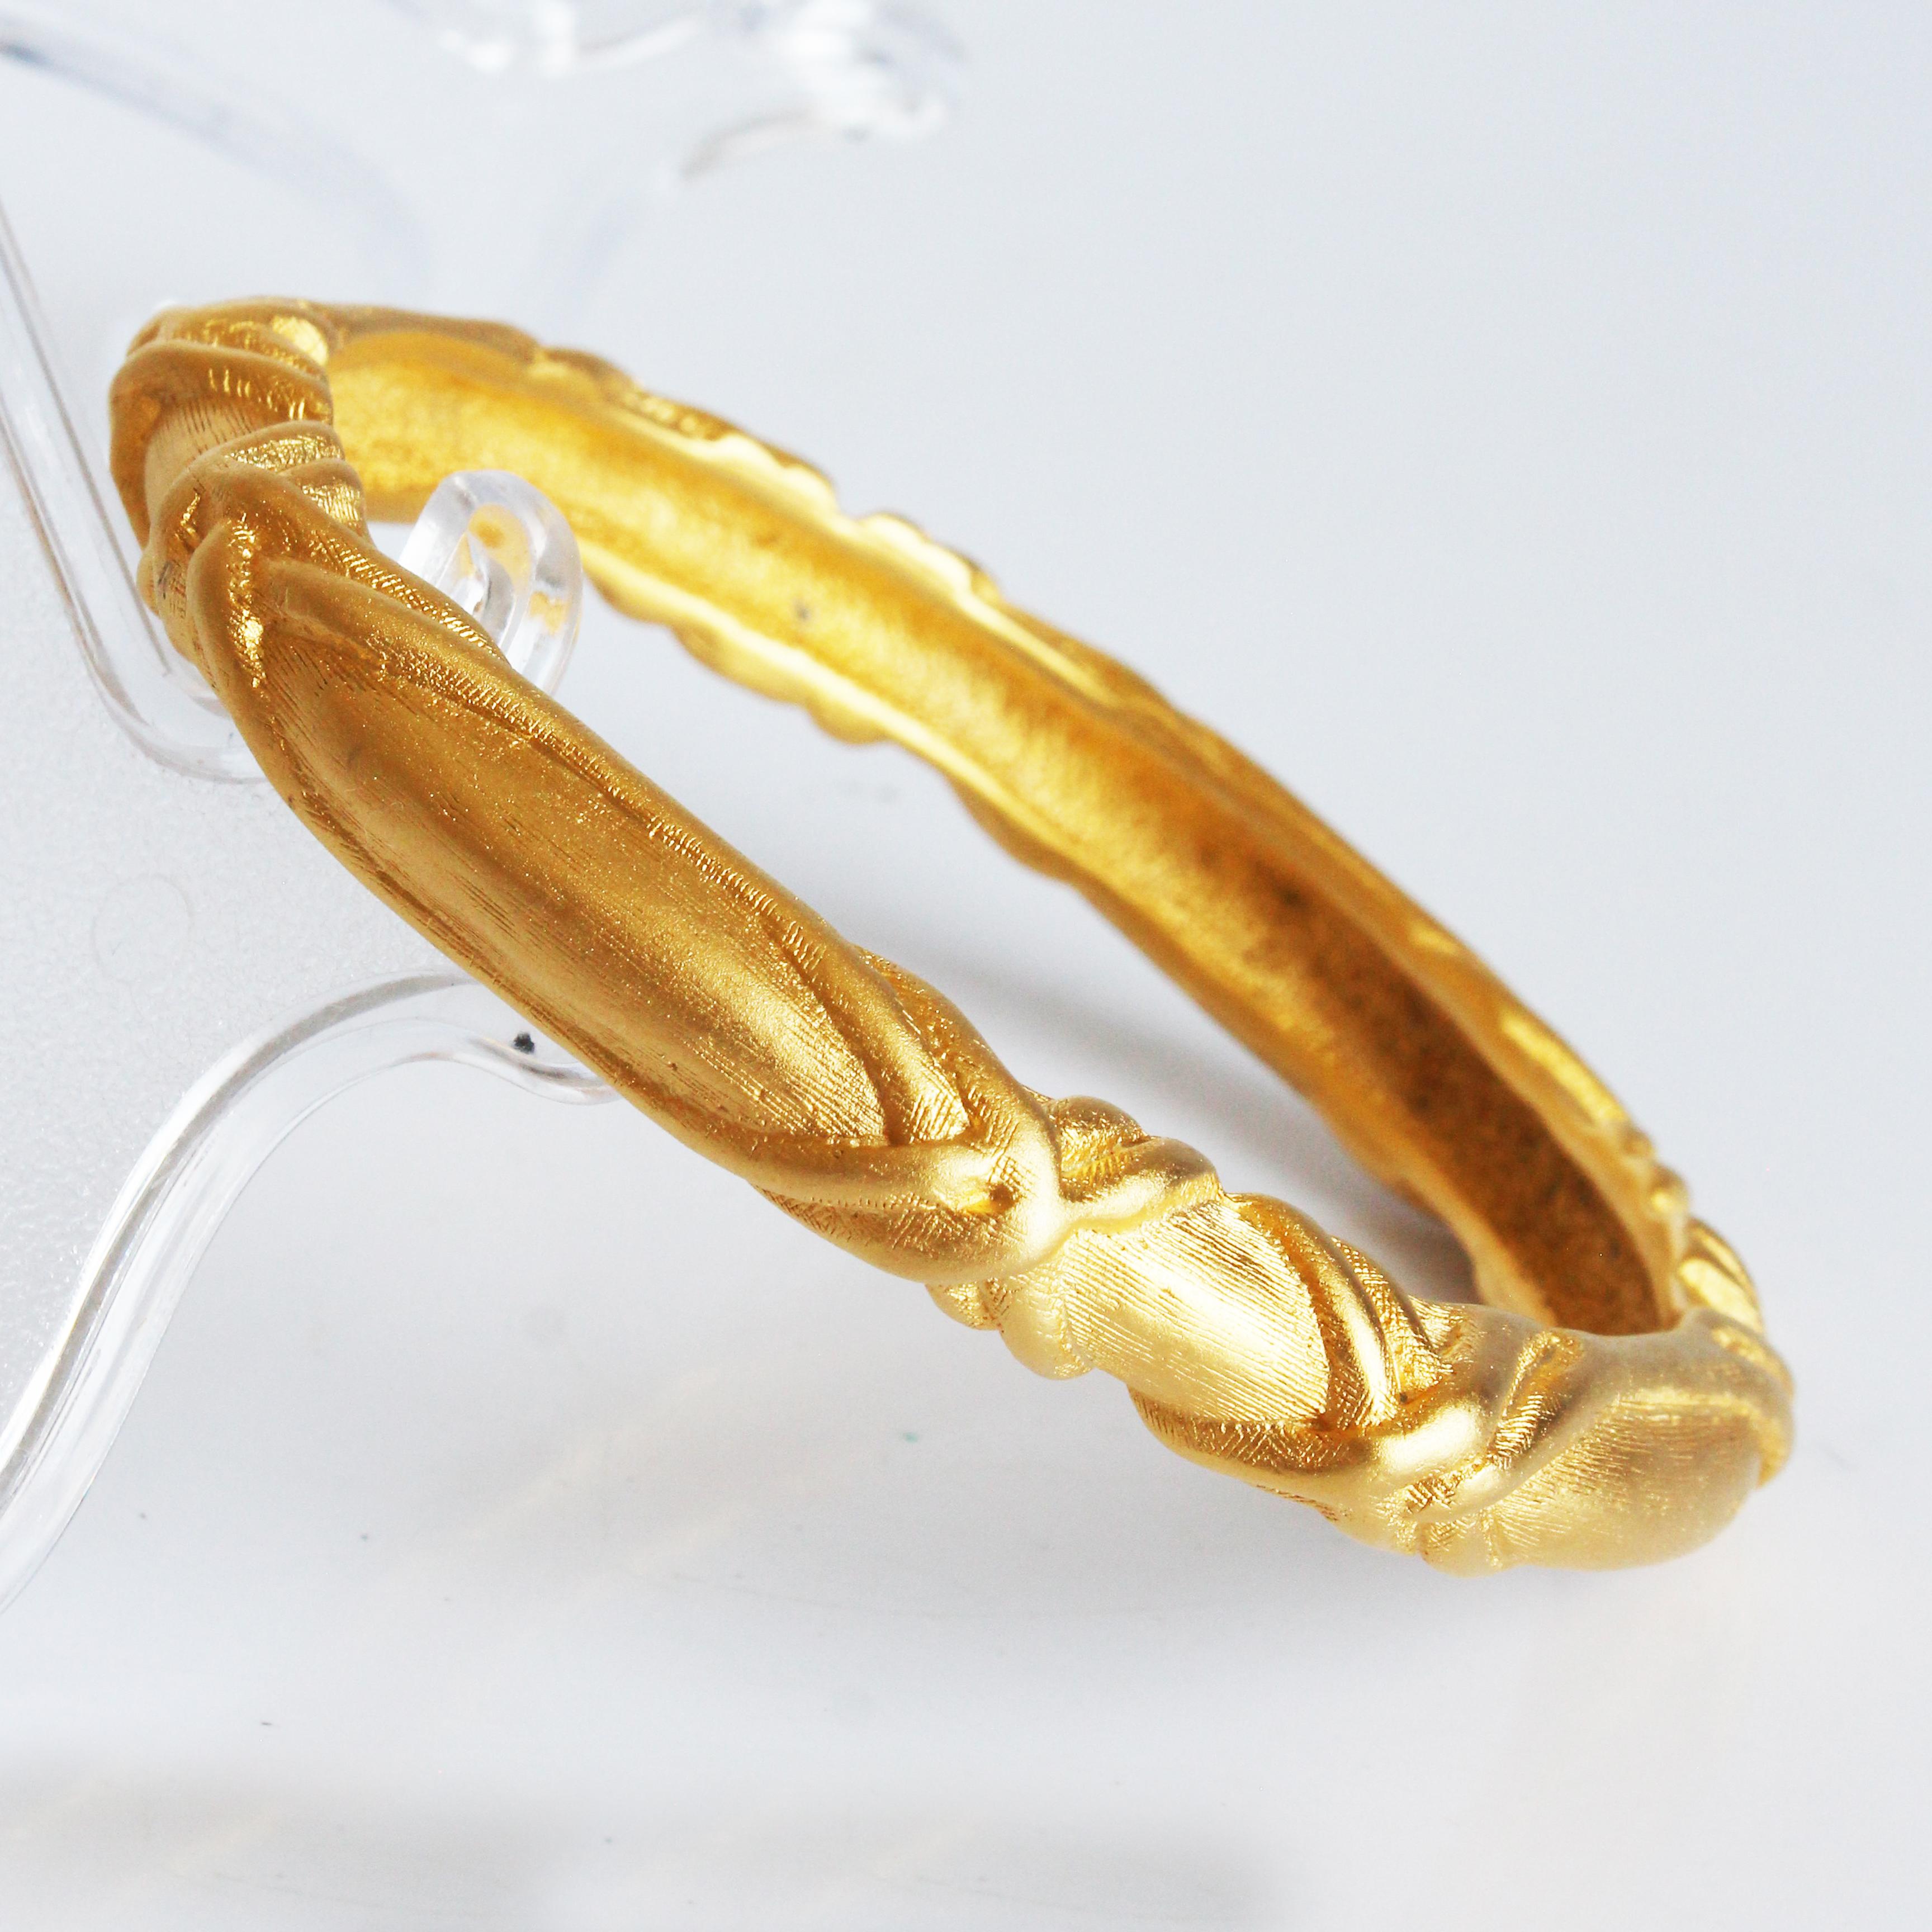 Bracelet vintage Givenchy d'occasion, probablement fabriqué dans les années 80.  Réalisé en métal doré, ce bracelet est orné d'un motif abstrait en forme de croix.  

Il est magnifique tel quel - ou associé à vos autres bracelets préférés ! La